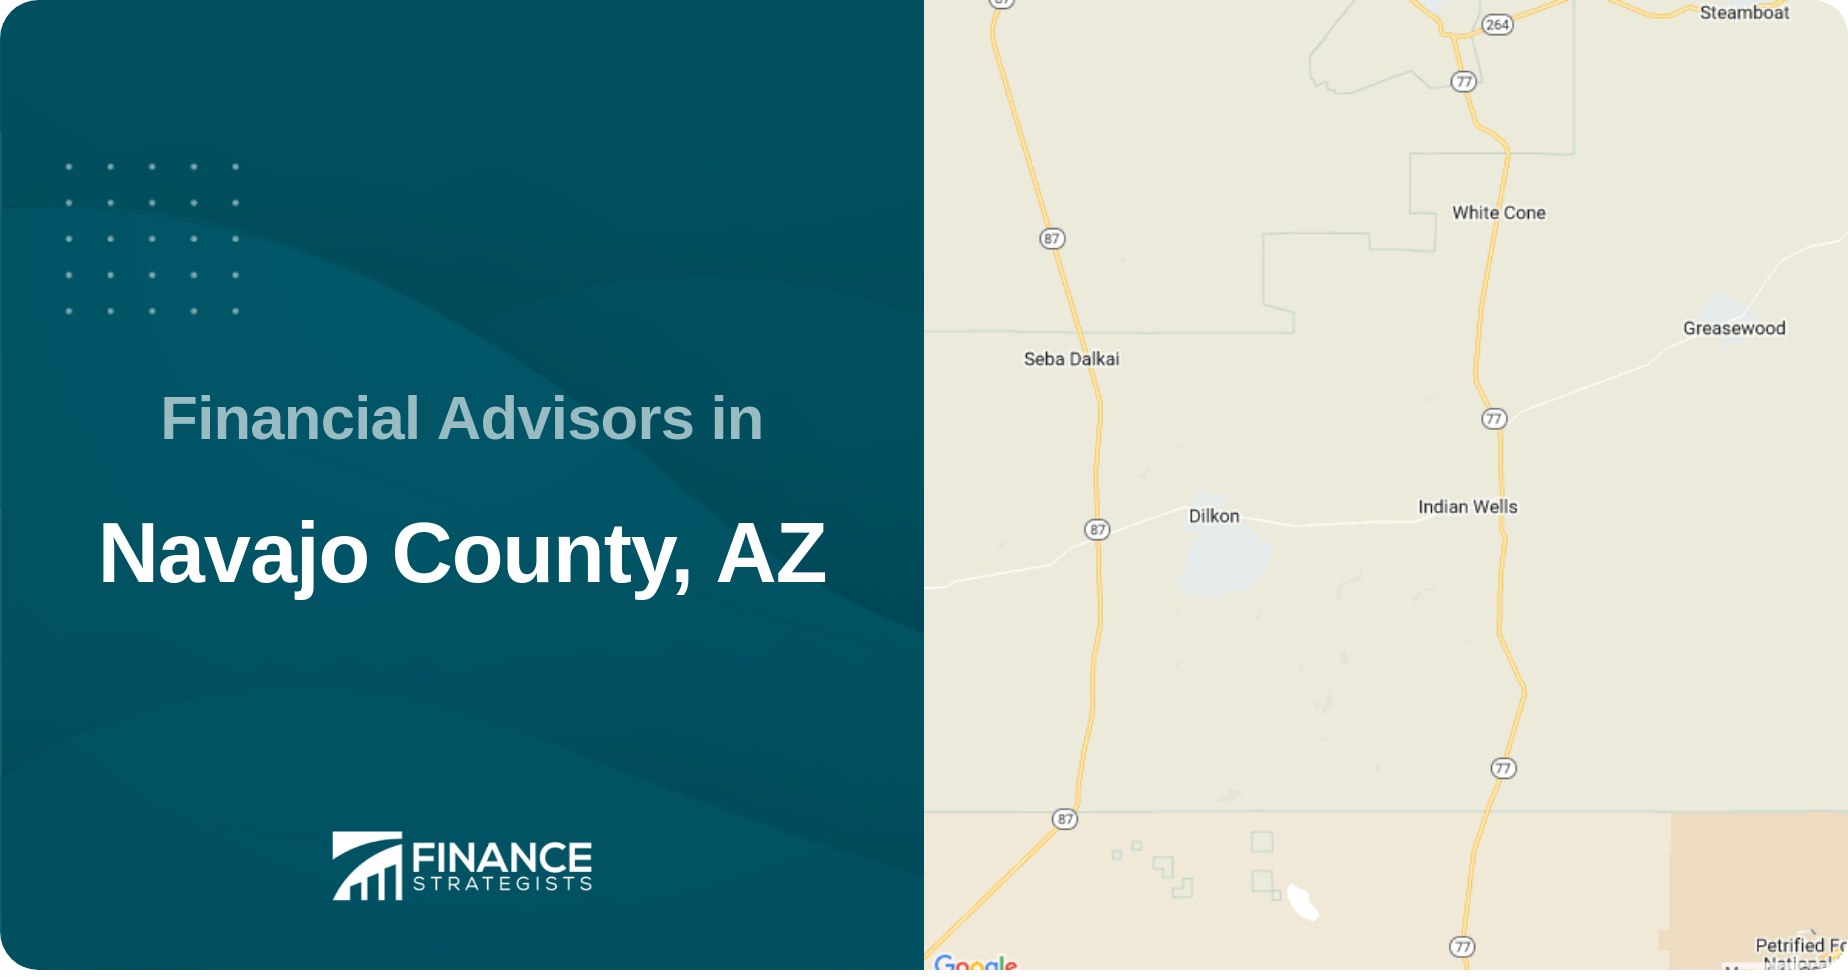 Financial Advisors in Navajo County, AZ